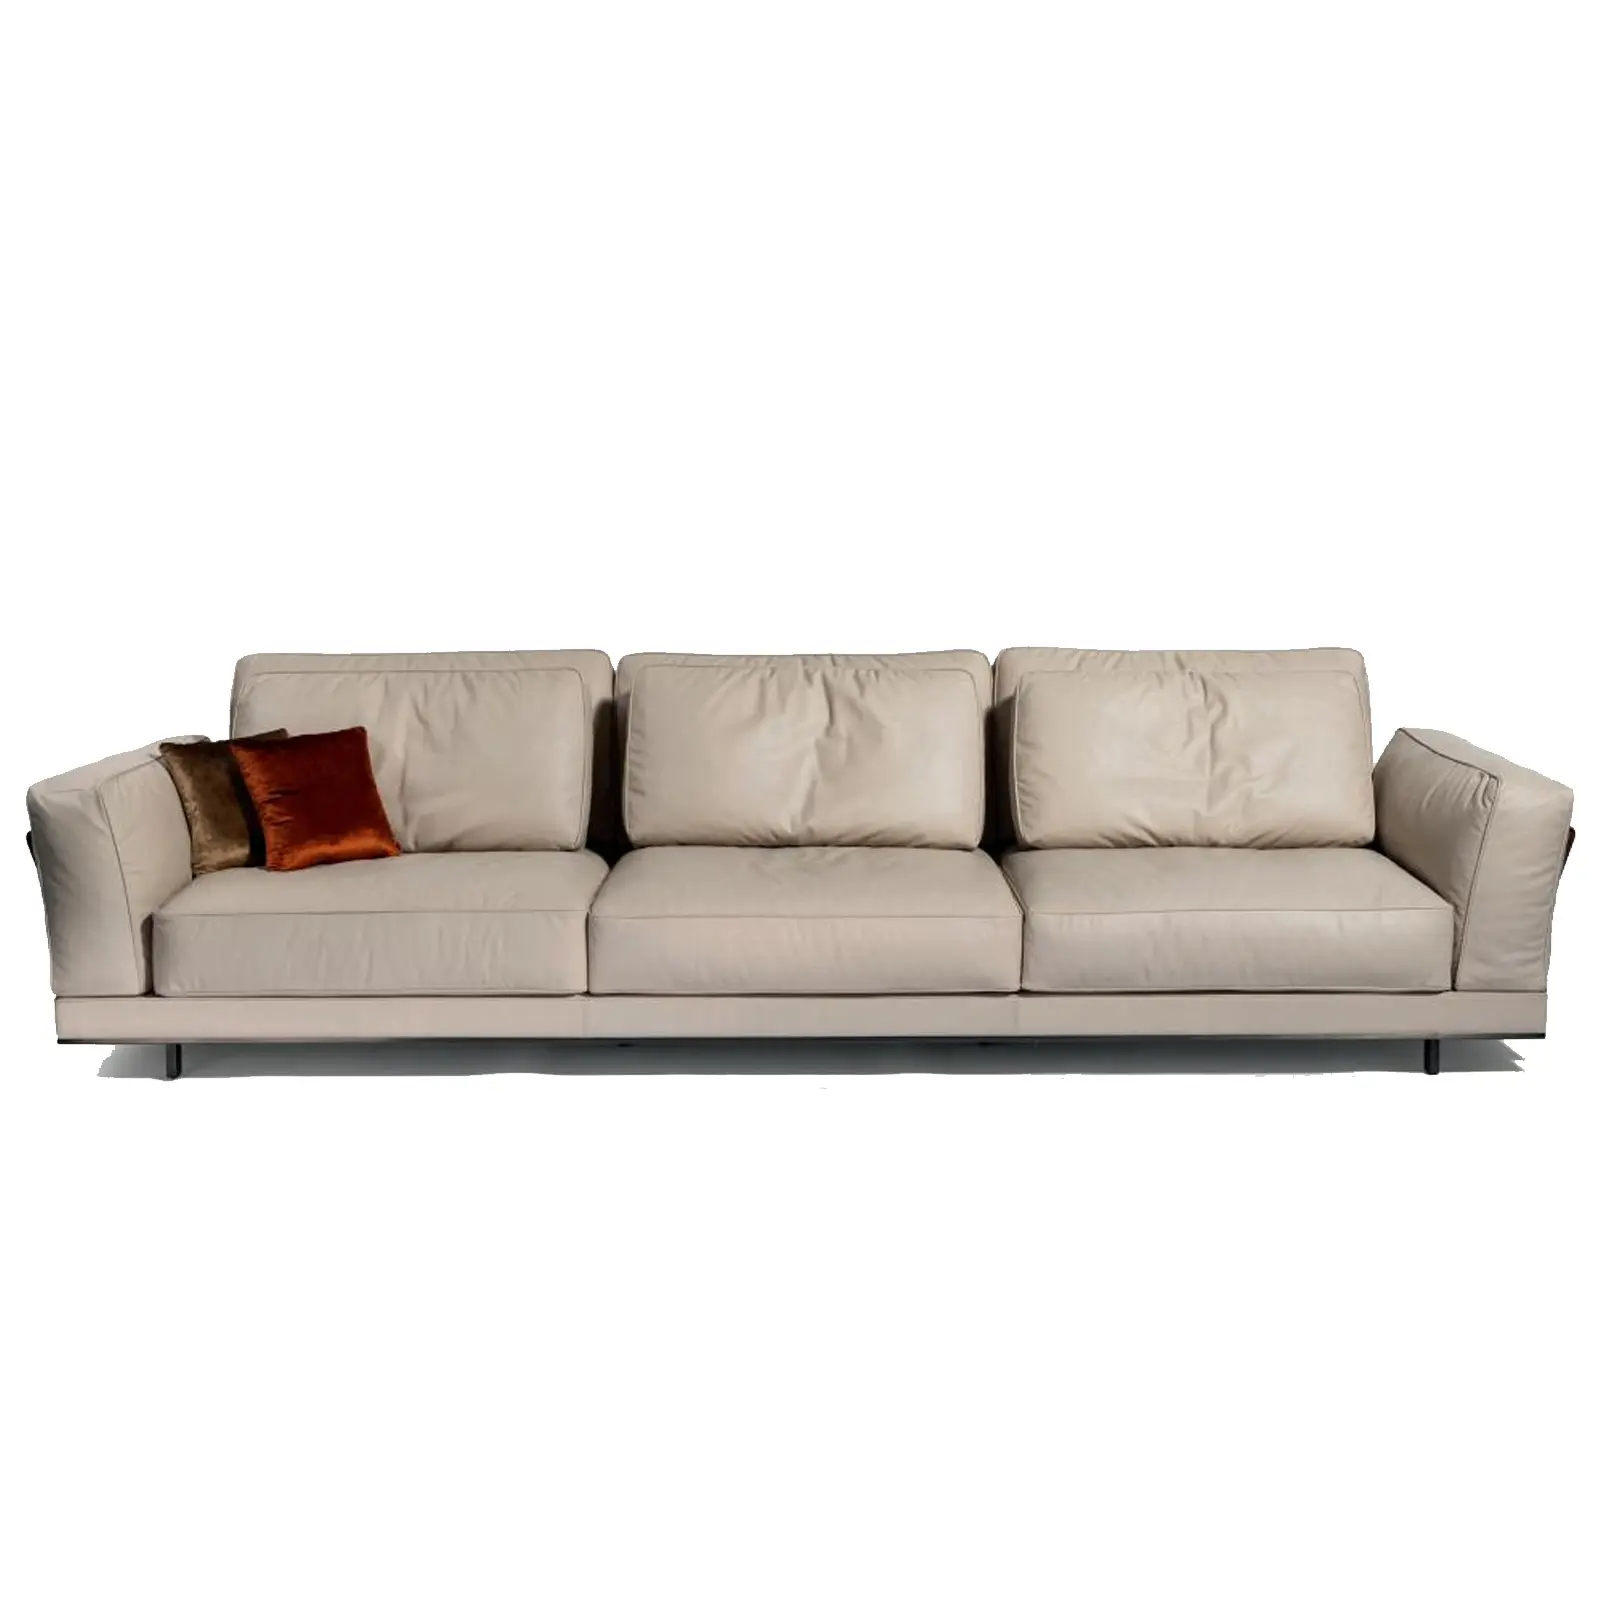 Canapé en tissu et cuir personnalisé, ensemble de meubles personnalisés en coupe, pour salon